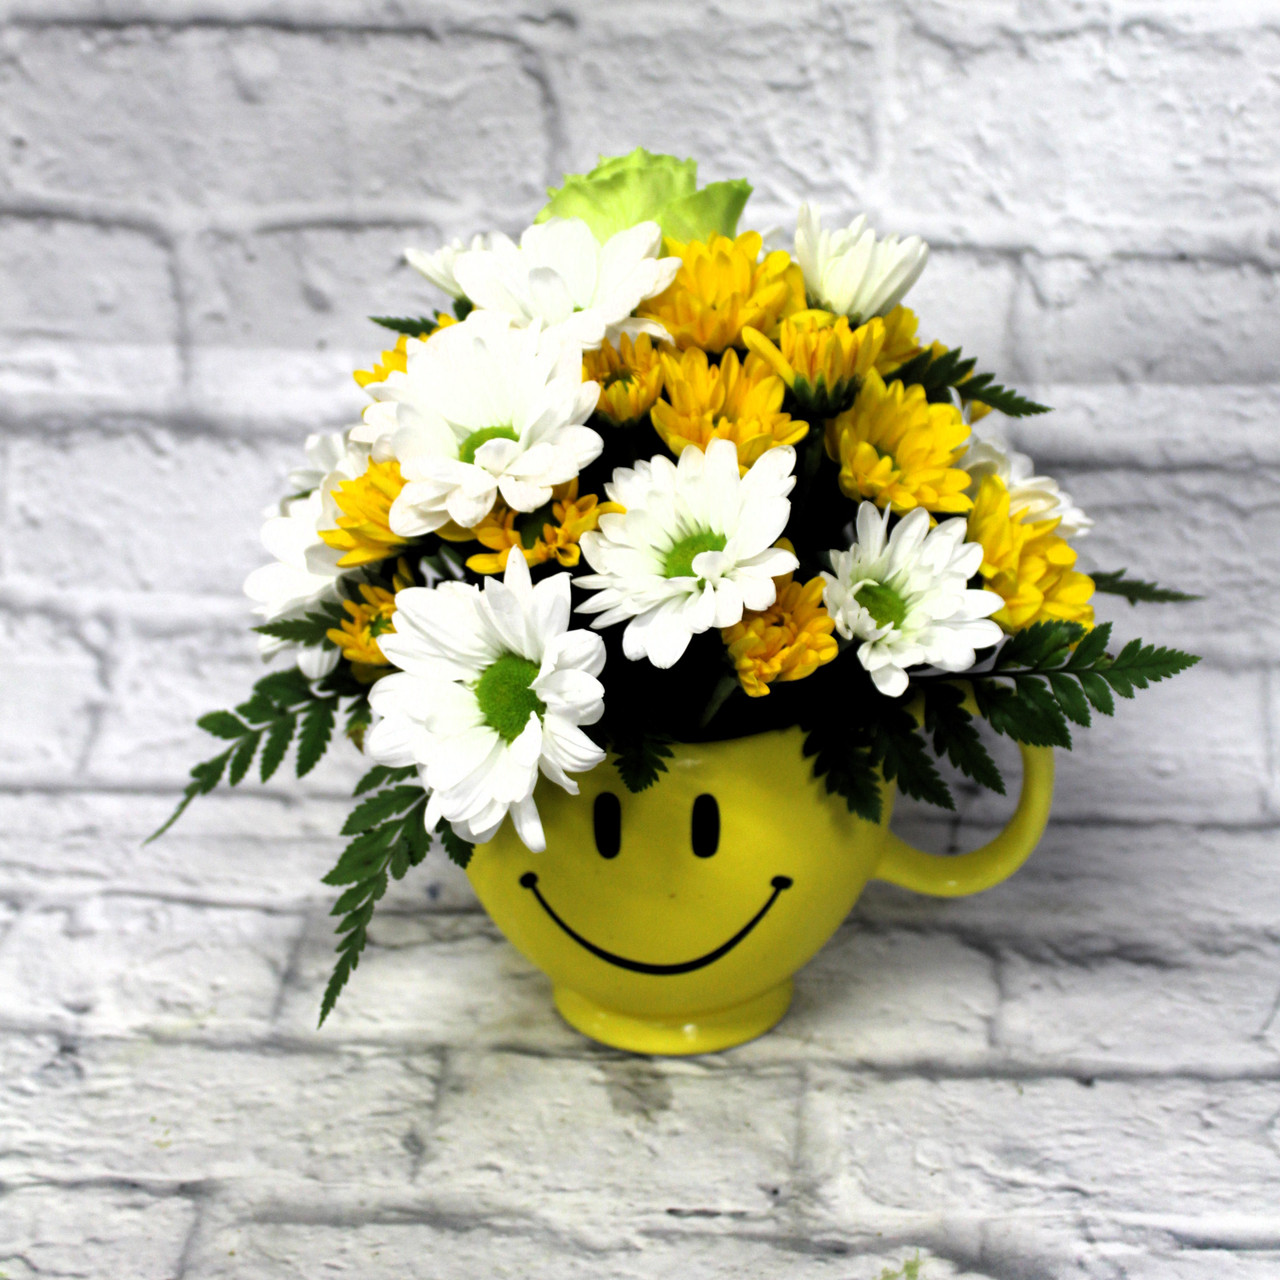 https://cdn11.bigcommerce.com/s-fhma6lp43/images/stencil/1280x1280/products/115/22091/Flowers_Happy_Face__55610.1693327595.JPG?c=2